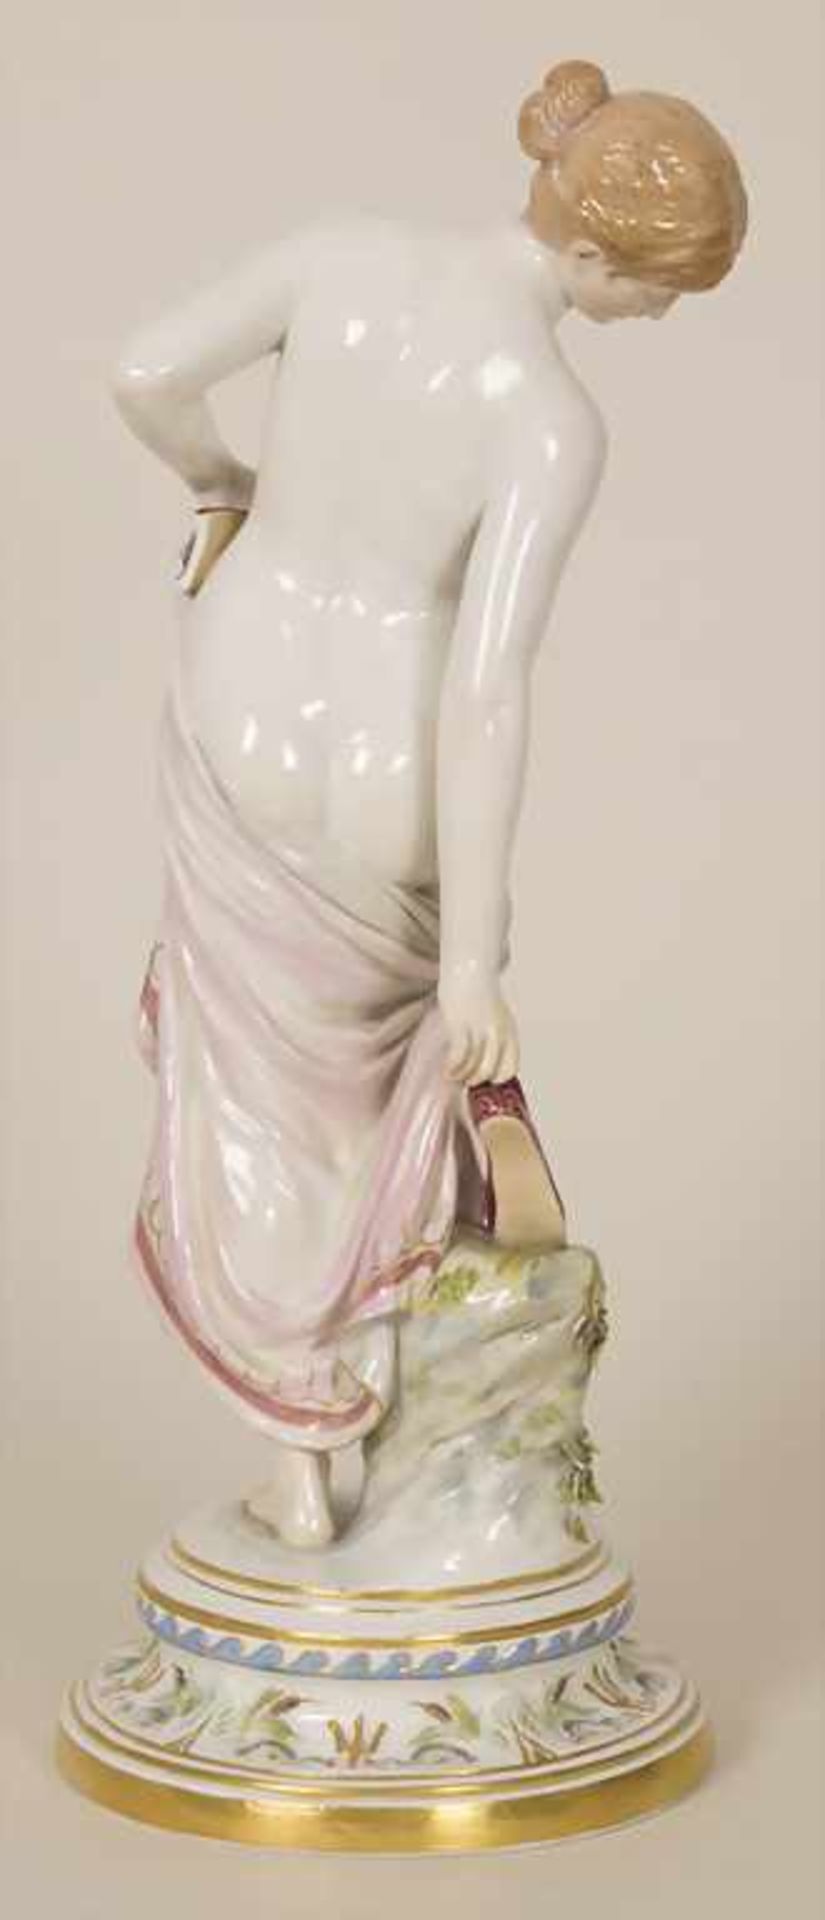 Porzellanfigur 'Nach dem Bade' / A porcelain figure 'After the bath', Robert Ockelmann (1849-1915) - Bild 3 aus 9